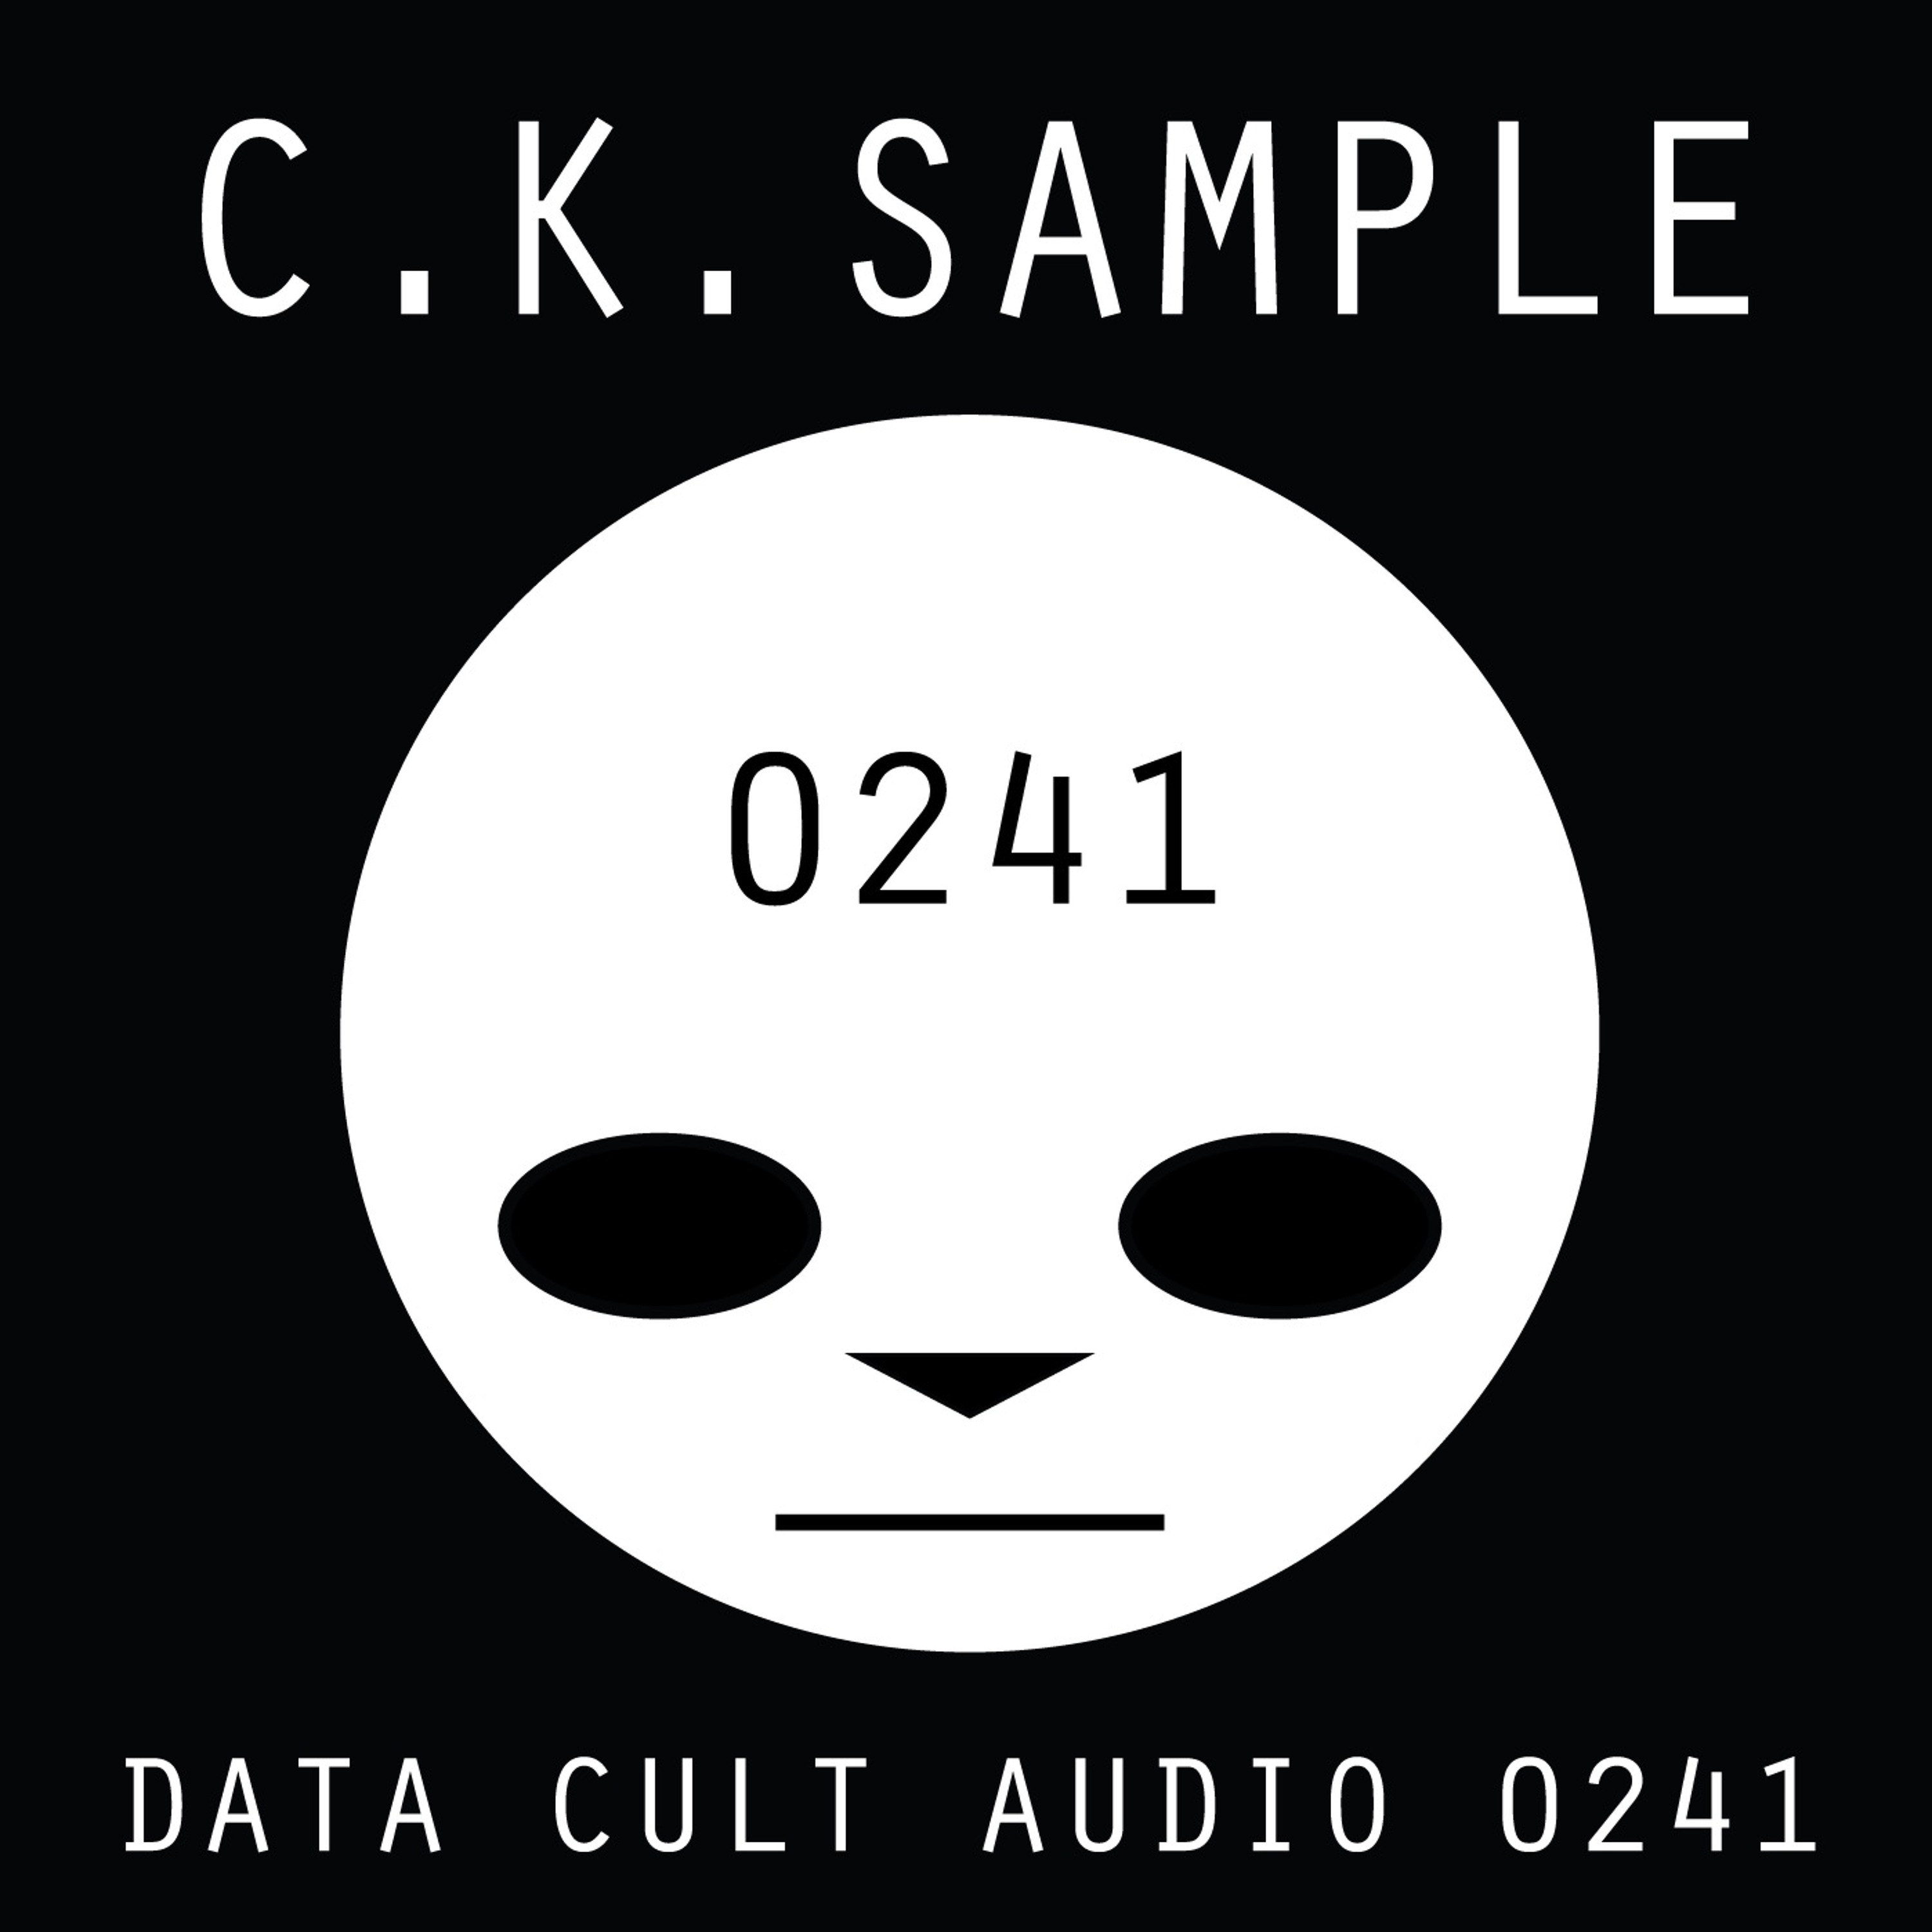 Data Cult Audio 0241 - C.K. Sample